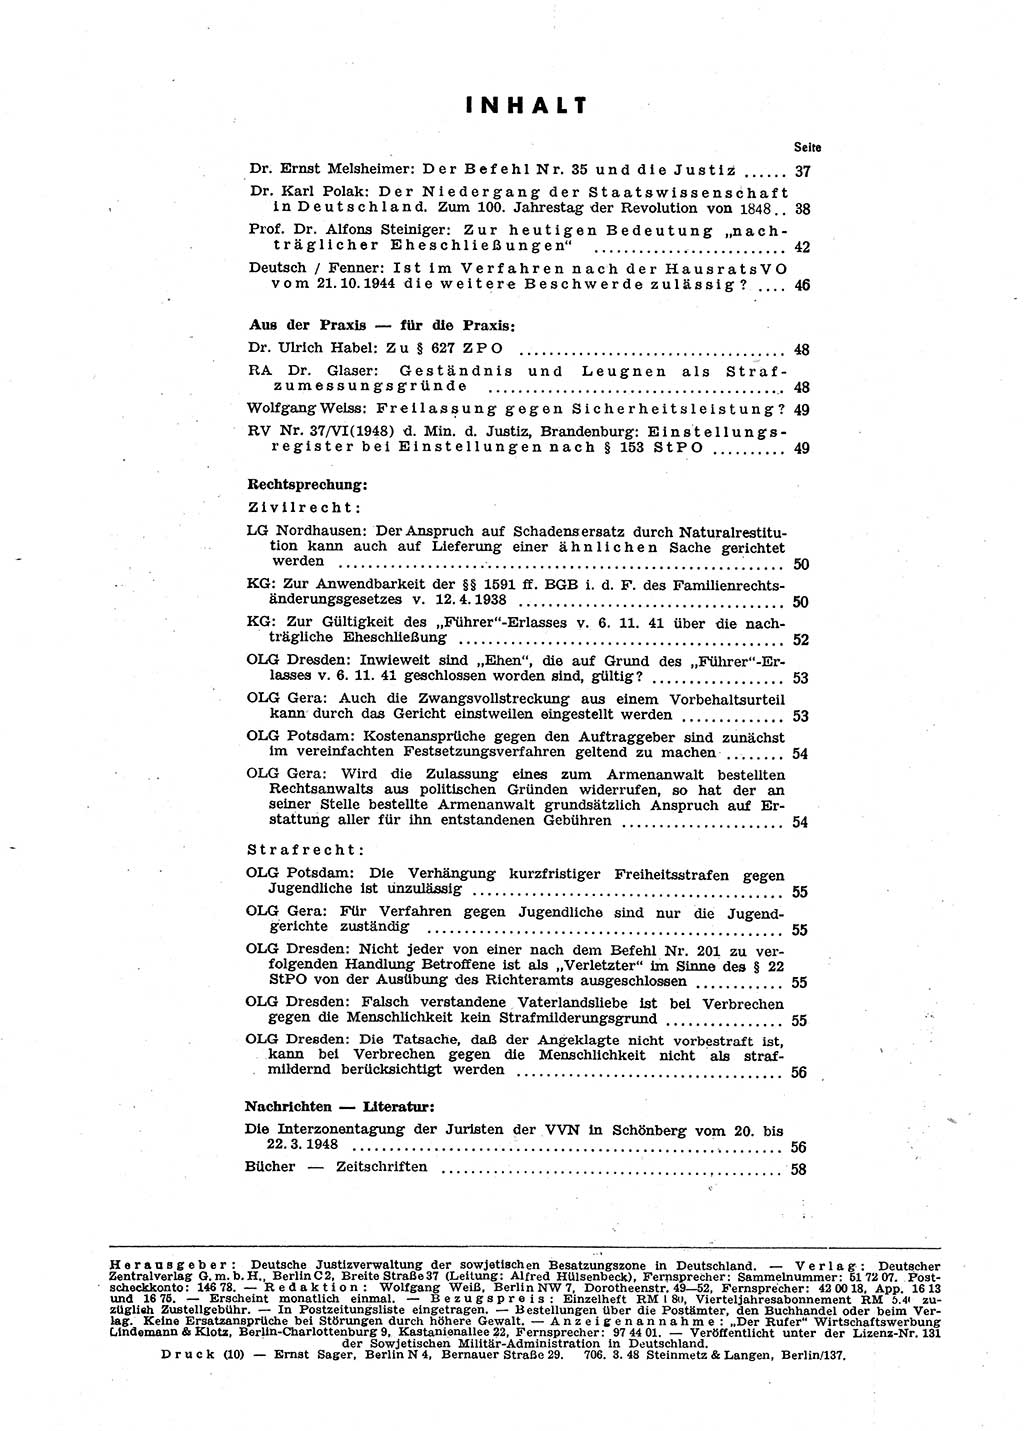 Neue Justiz (NJ), Zeitschrift für Recht und Rechtswissenschaft [Sowjetische Besatzungszone (SBZ) Deutschland], 2. Jahrgang 1948, Seite 60 (NJ SBZ Dtl. 1948, S. 60)